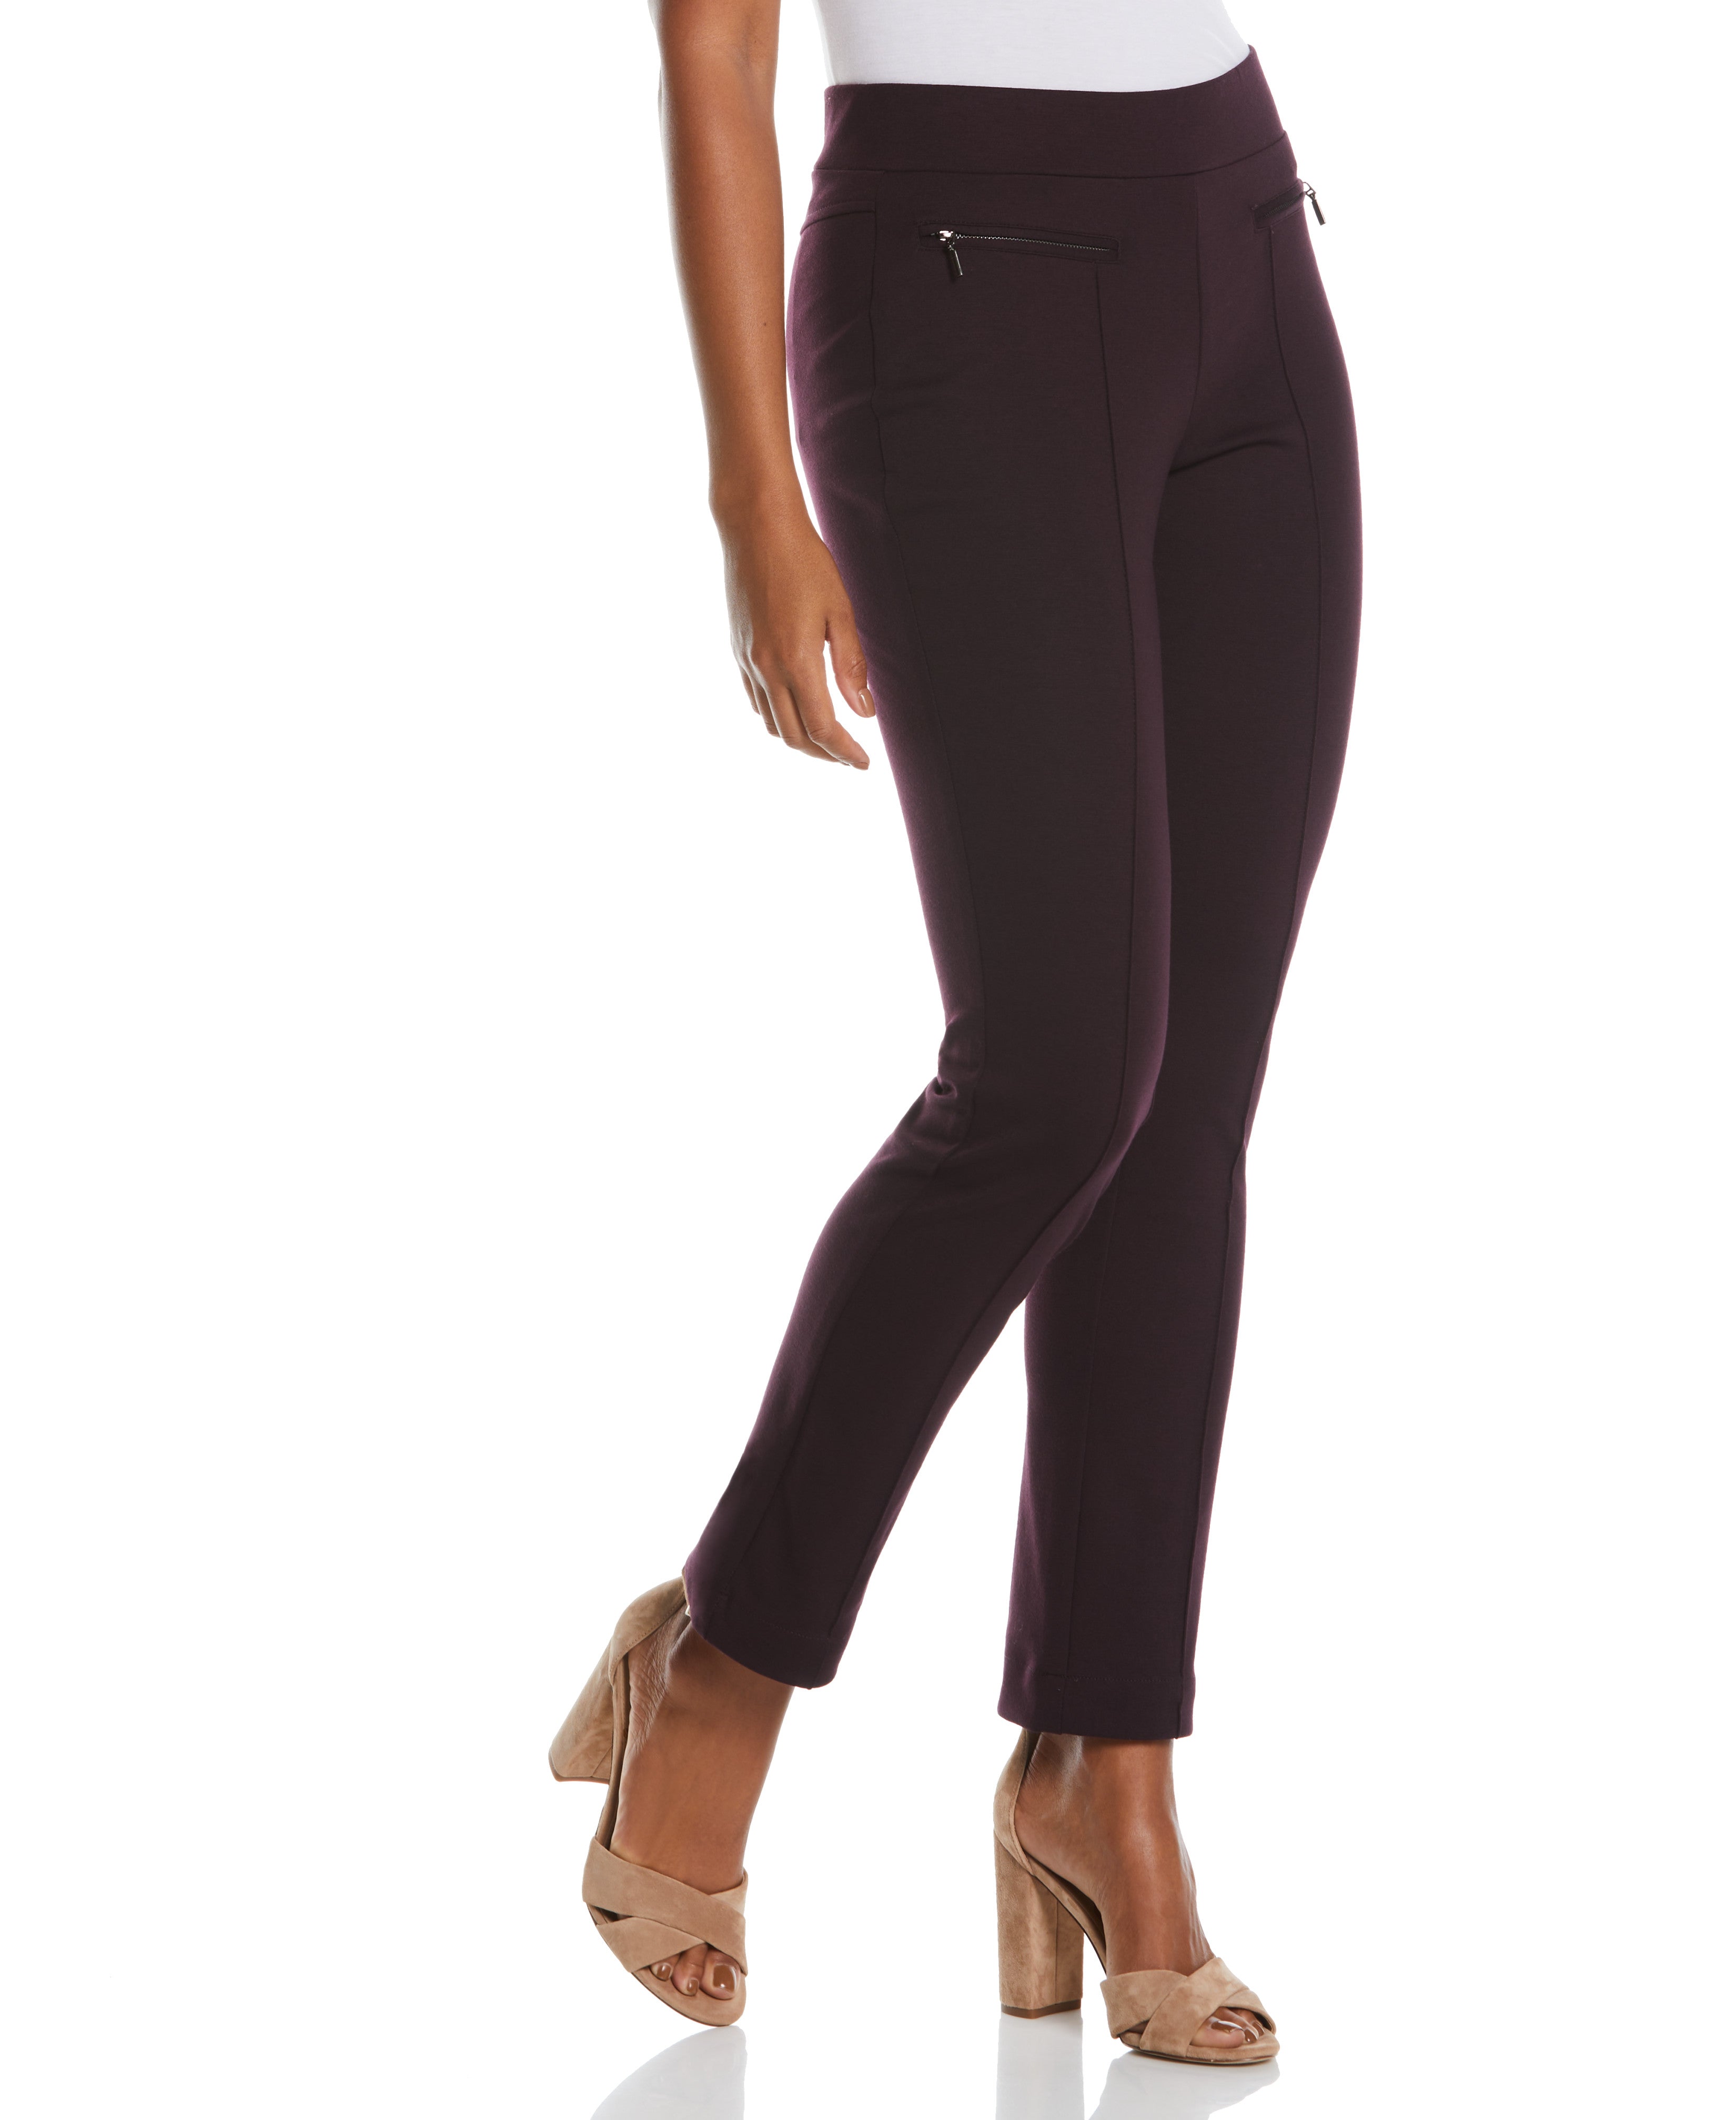 Riley & Rae Women's Reese Slim Leg Stretch Dress Pants Black Size